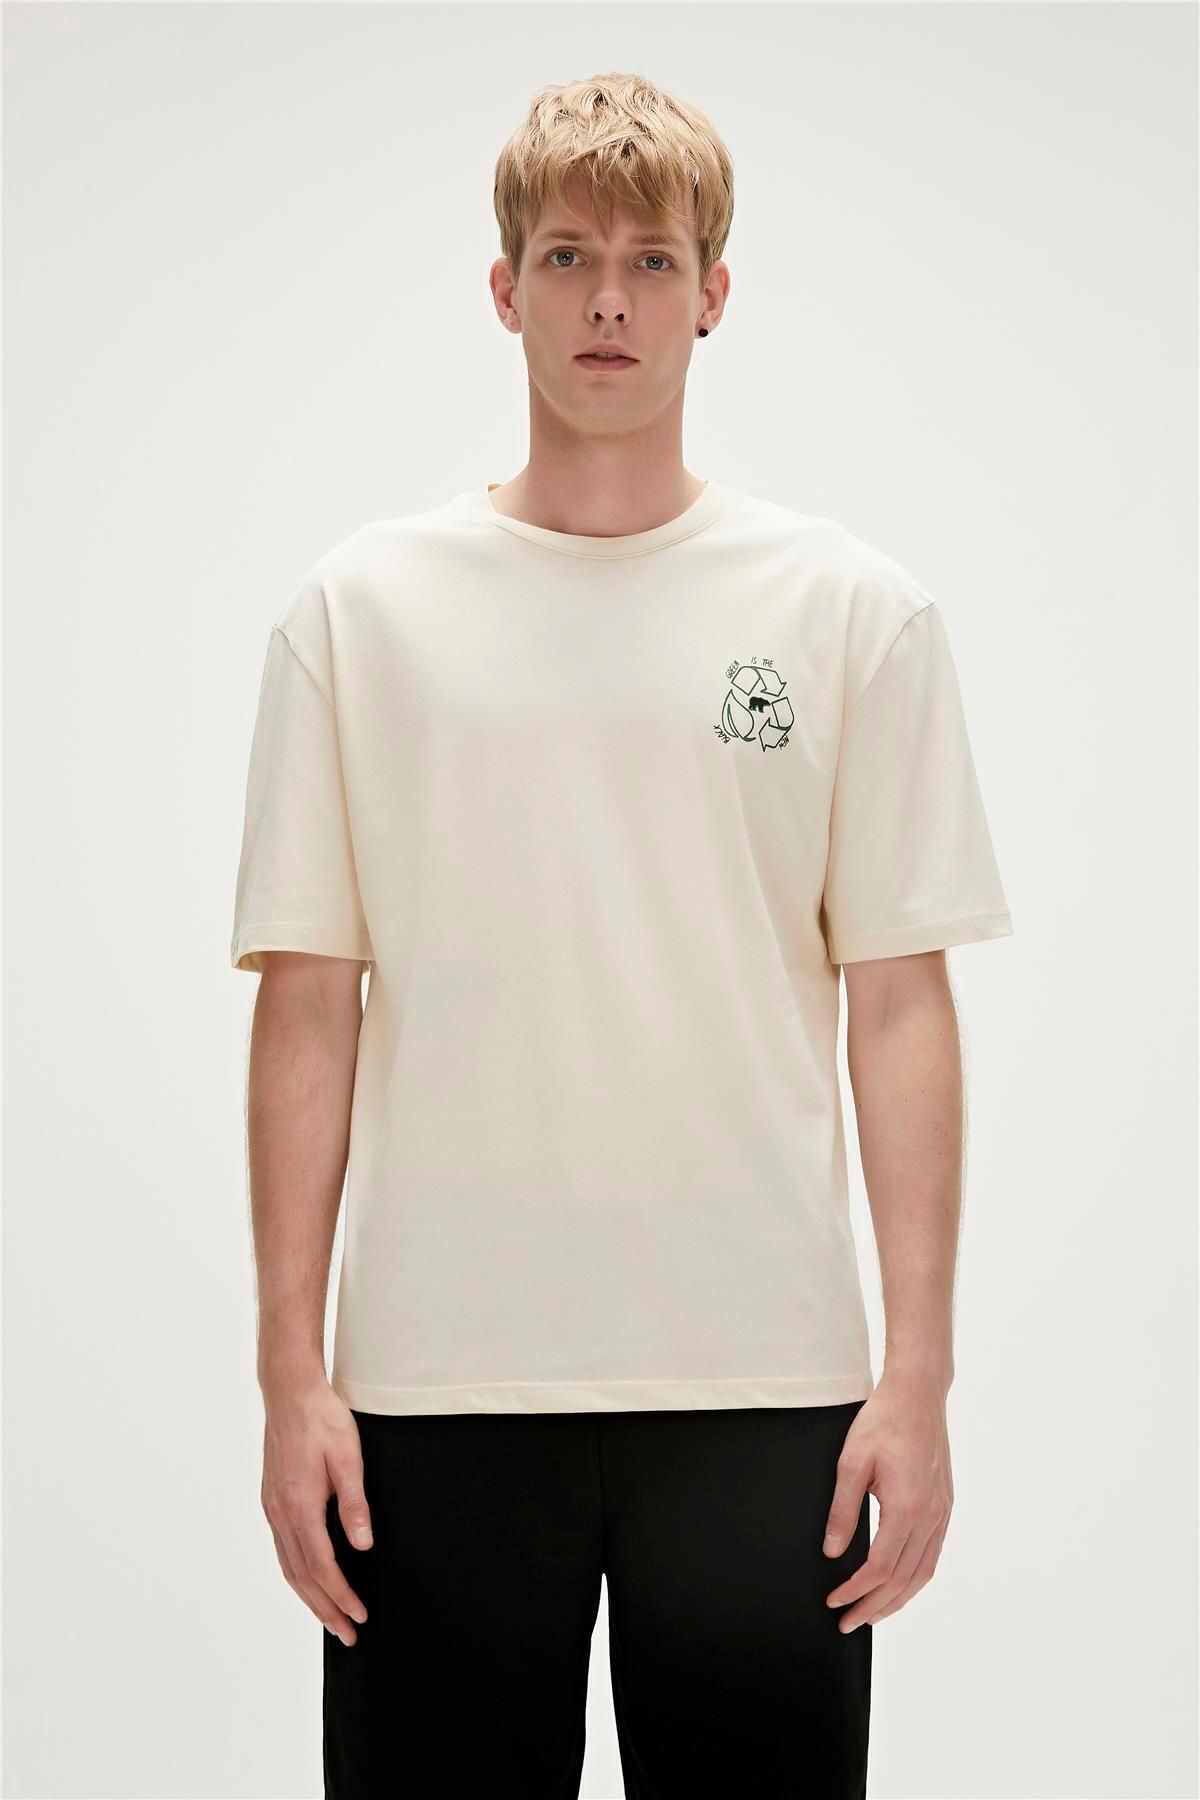 Bad Bear Re-world Recycle Marshmallow Beyaz T-shirt Baskılı Erkek Tişört